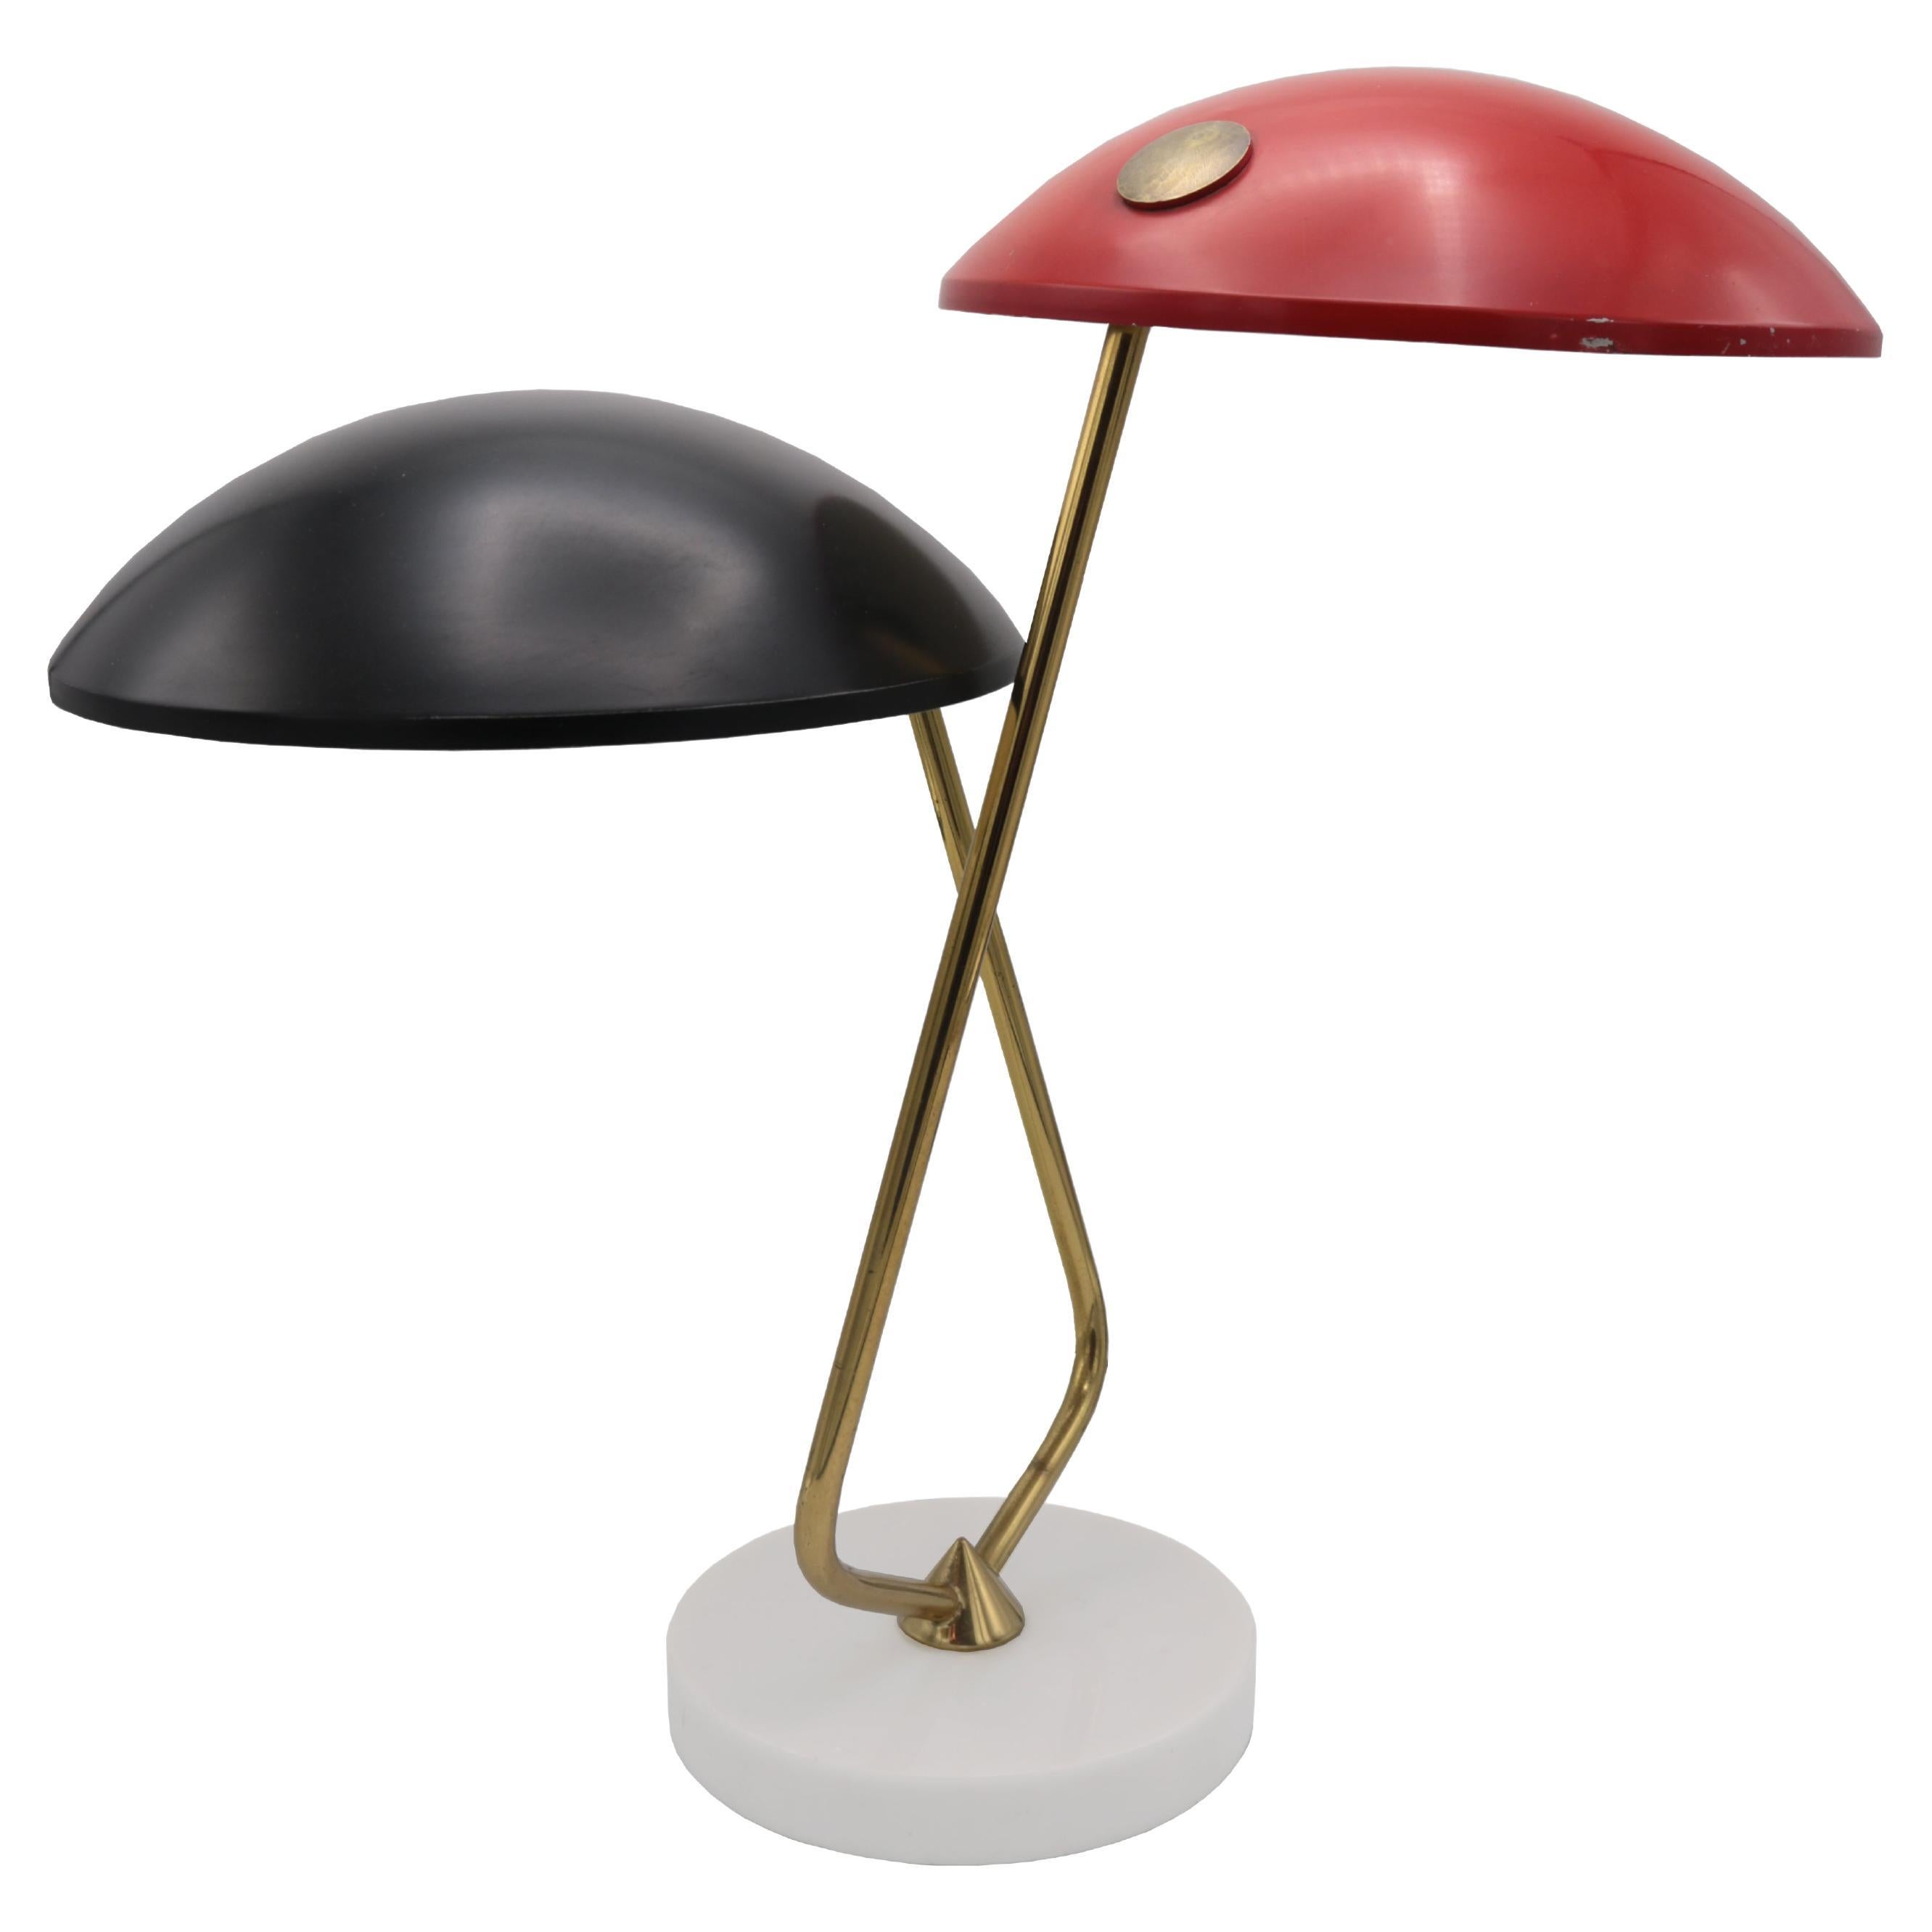  Stilnovo Small Modernist Table Lamp